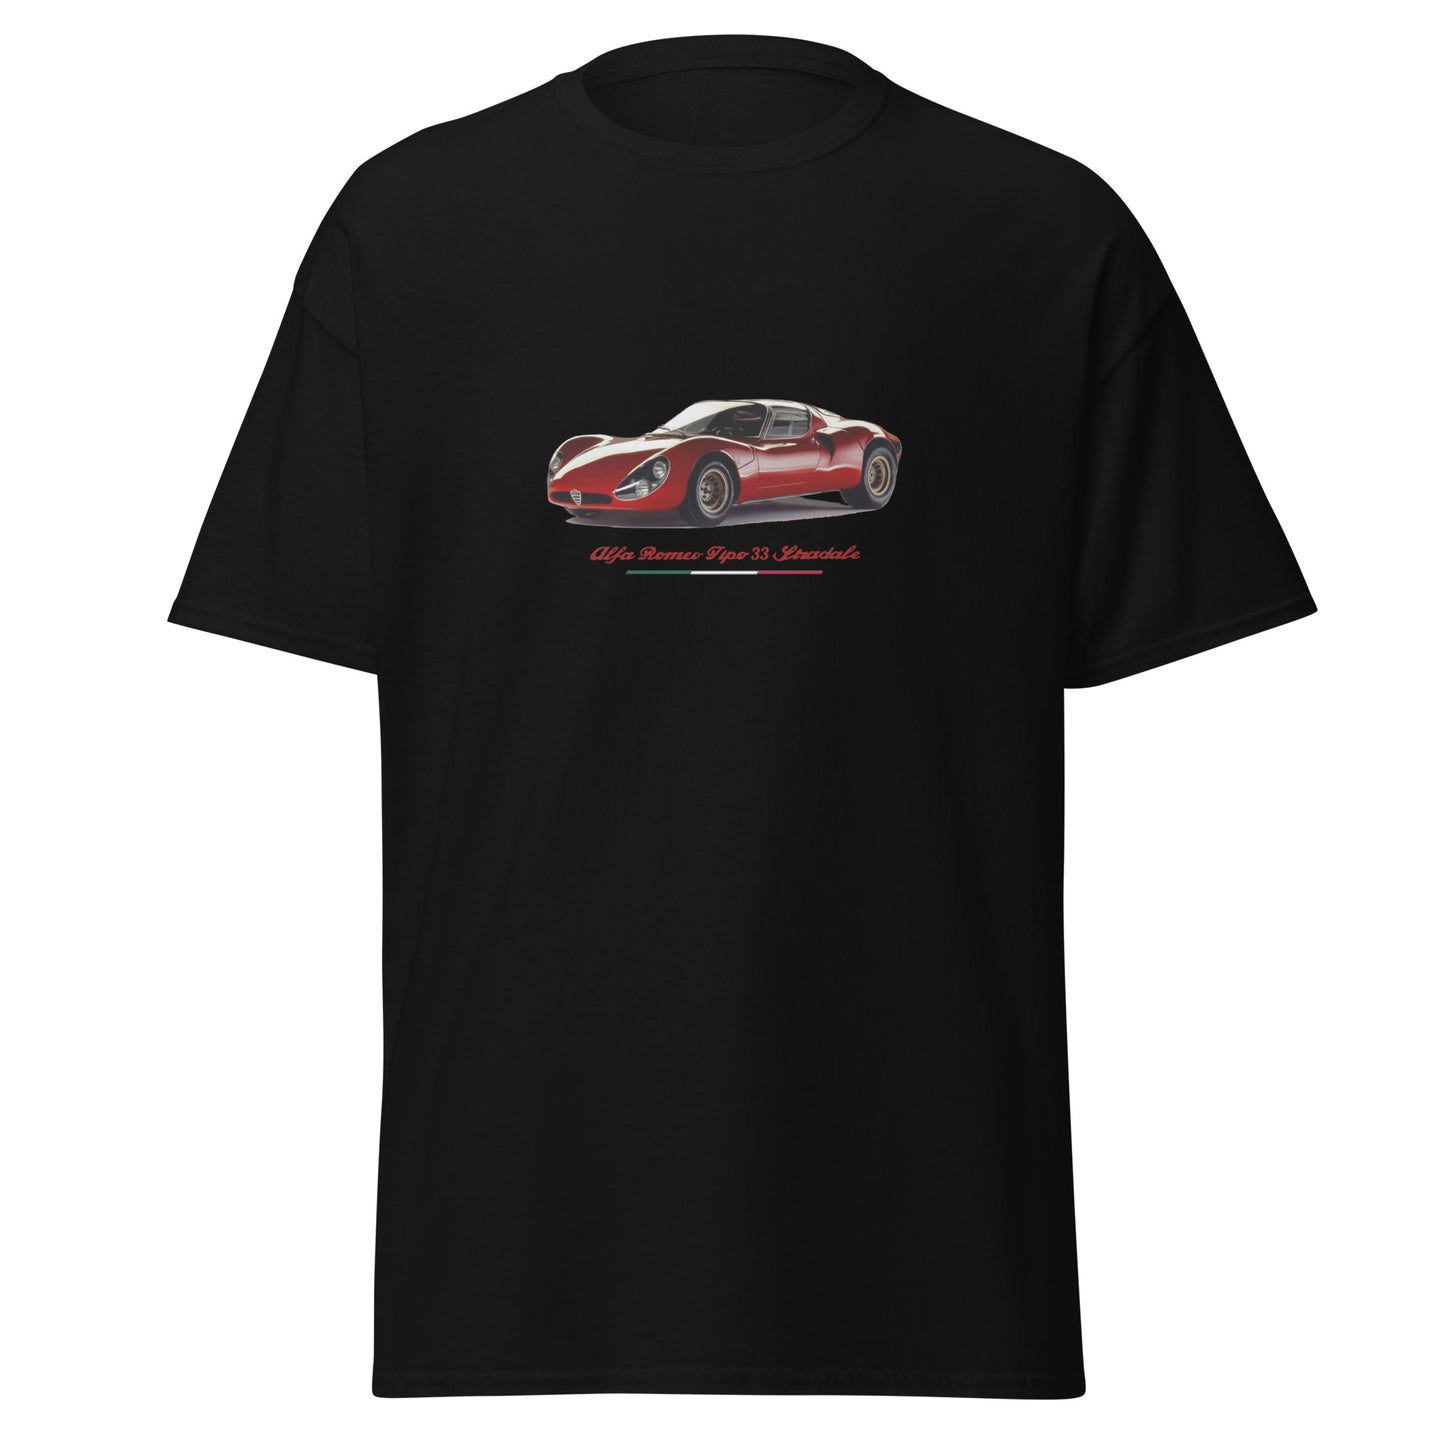 T-shirt Alfa Romeo 33 Stradale old car